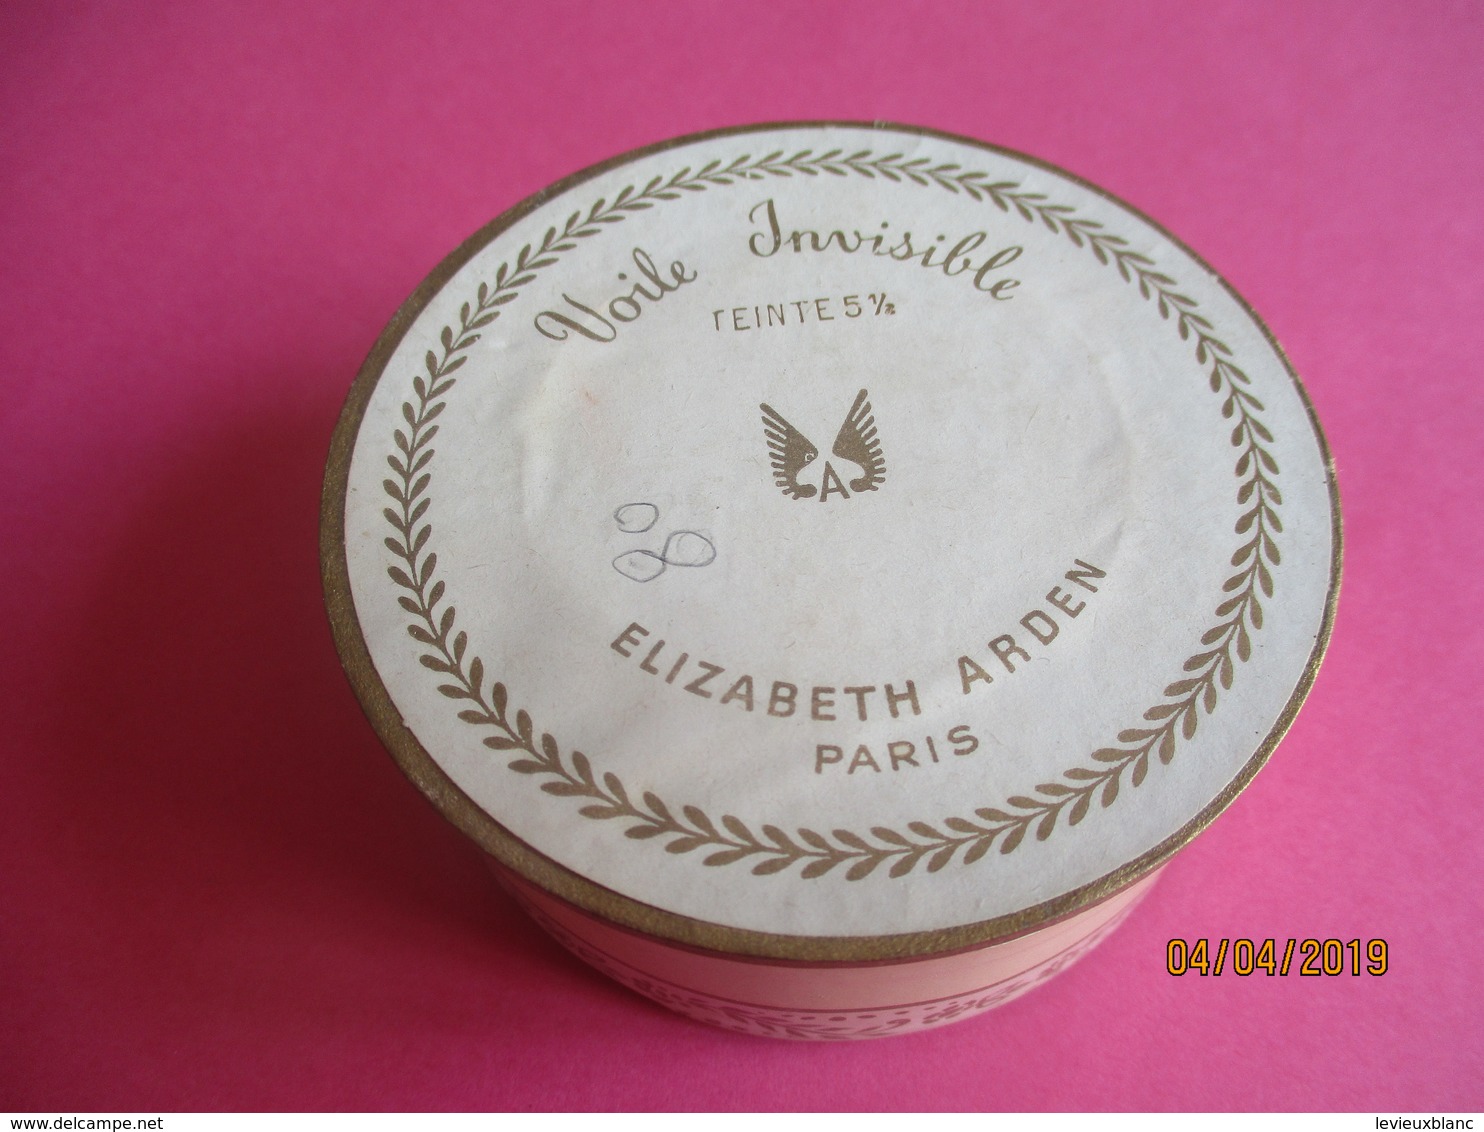 Maquillage/Boite de Poudre de riz/Elisabeth ARDEN/Paris/ Voile Invisible /Vers 1930-50    PARF185